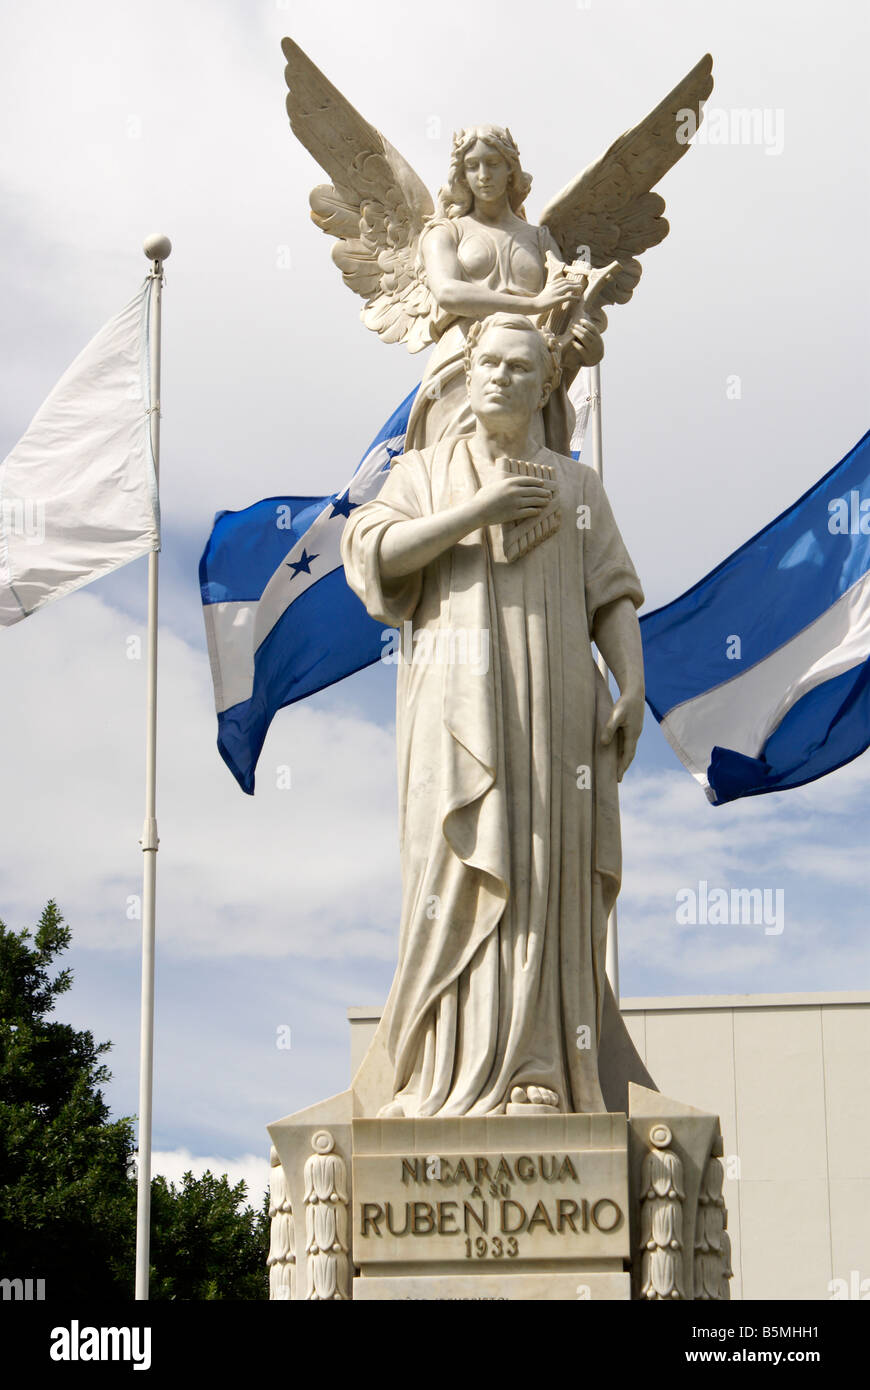 Le monument Monumento a Ruben Dario dans le centre-ville de Managua, Nicaragua Banque D'Images